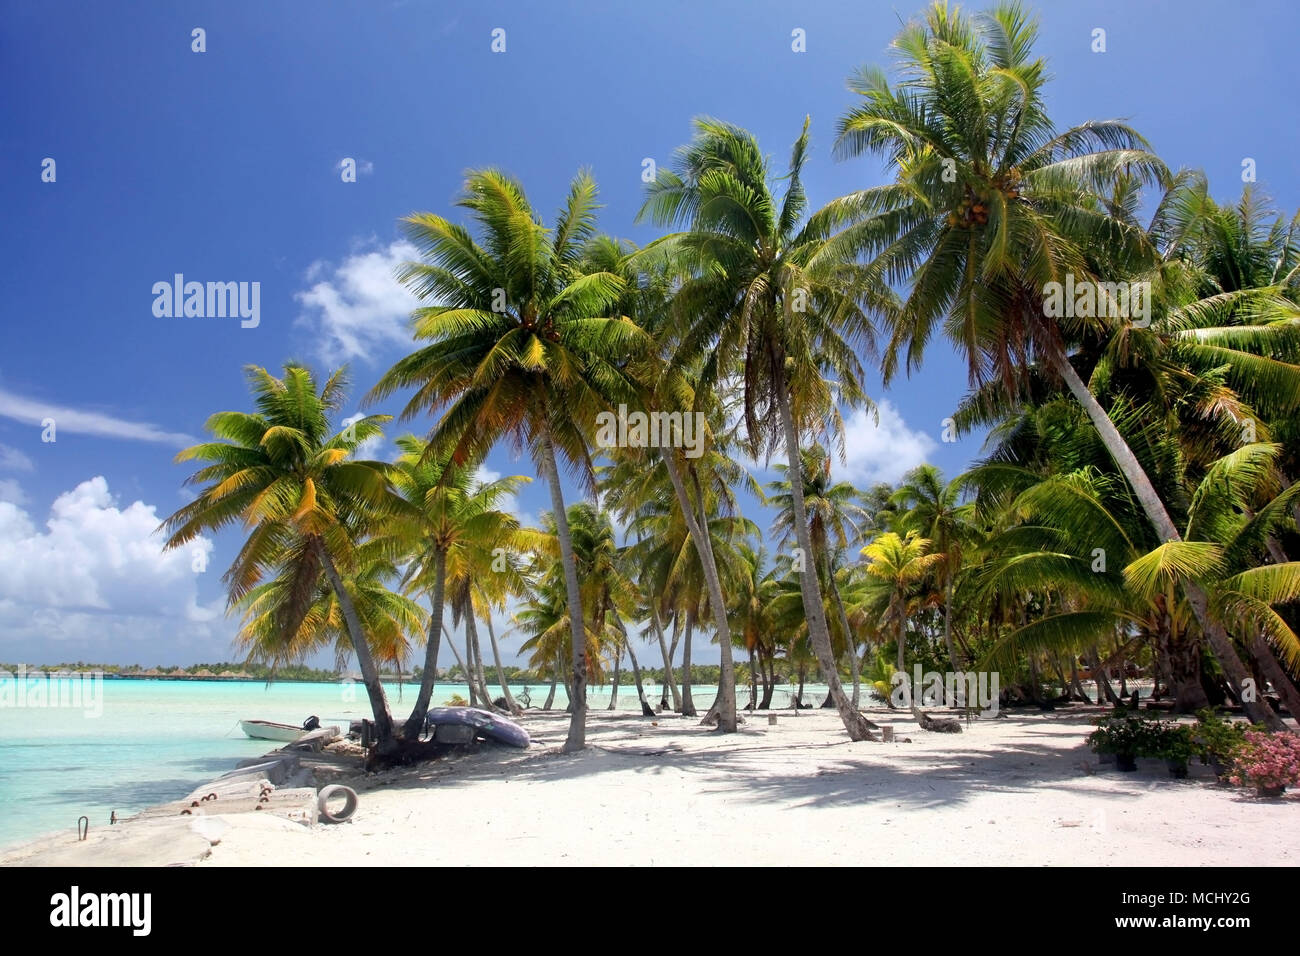 Tropical beach with palm trees, Bora Bora, French Polynesia. Stock Photo